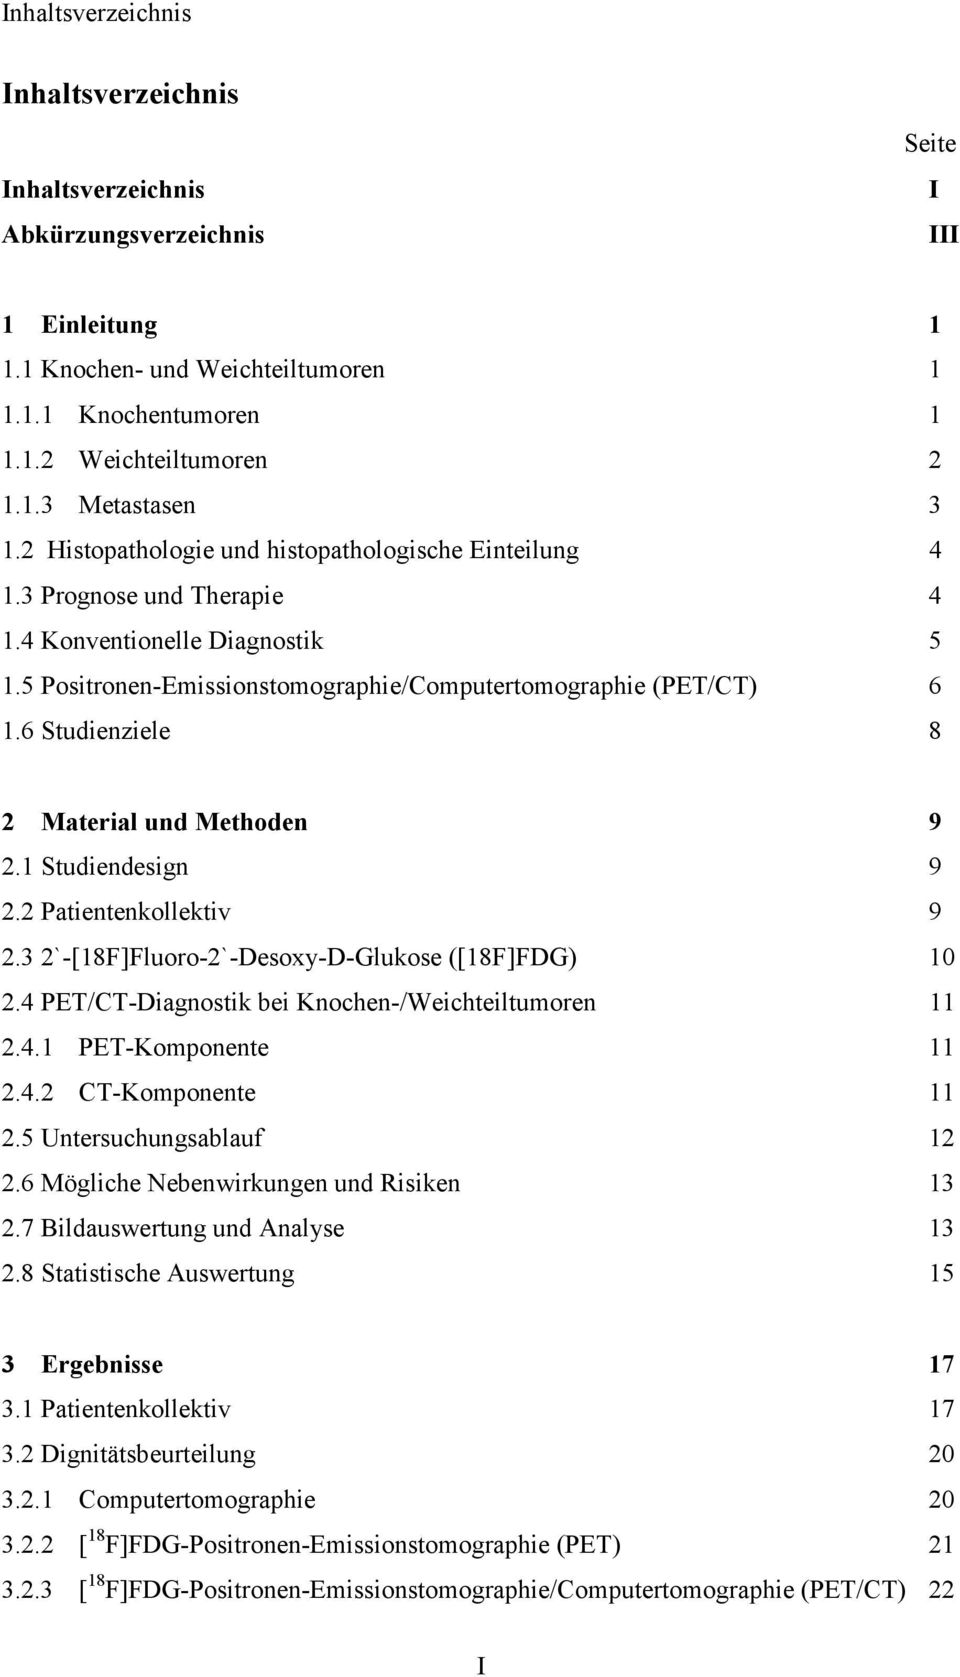 6 Studienziele 8 2 Material und Methoden 9 2.1 Studiendesign 9 2.2 Patientenkollektiv 9 2.32`-[18F]Fluoro-2`-Desoxy-D-Glukose ([18F]FDG) 10 2.4 PET/CT-Diagnostik bei Knochen-/Weichteiltumoren 11 2.4.1 PET-Komponente 11 2.